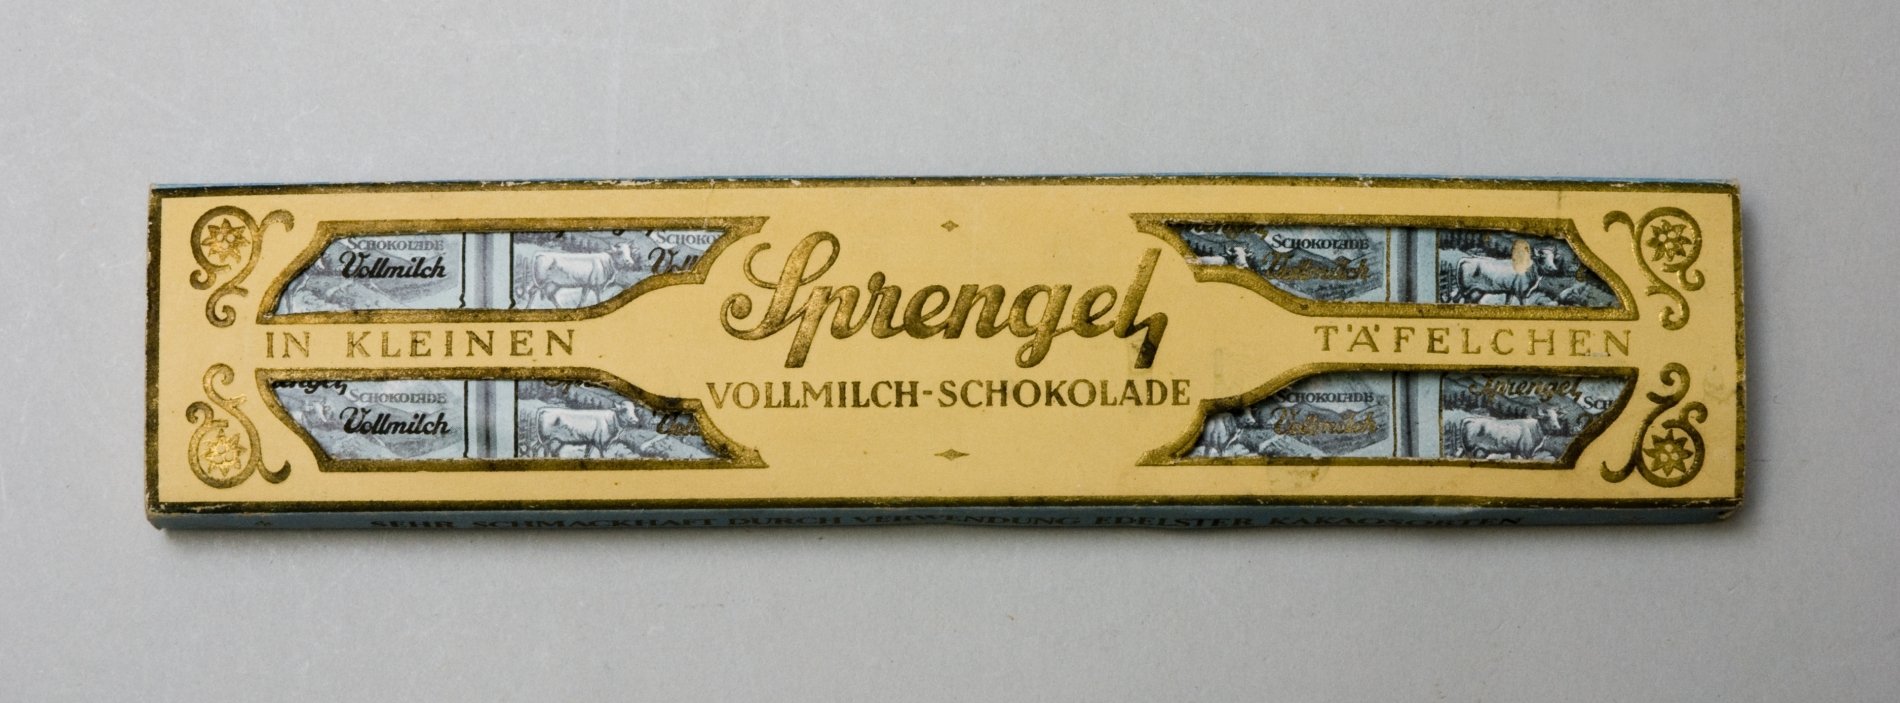 Packung "Sprengel Vollmich-Schokolade in kleinen Täfelchen" (Stiftung Domäne Dahlem - Landgut und Museum, Weiternutzung nur mit Genehmigung des Museums CC BY-NC-SA)